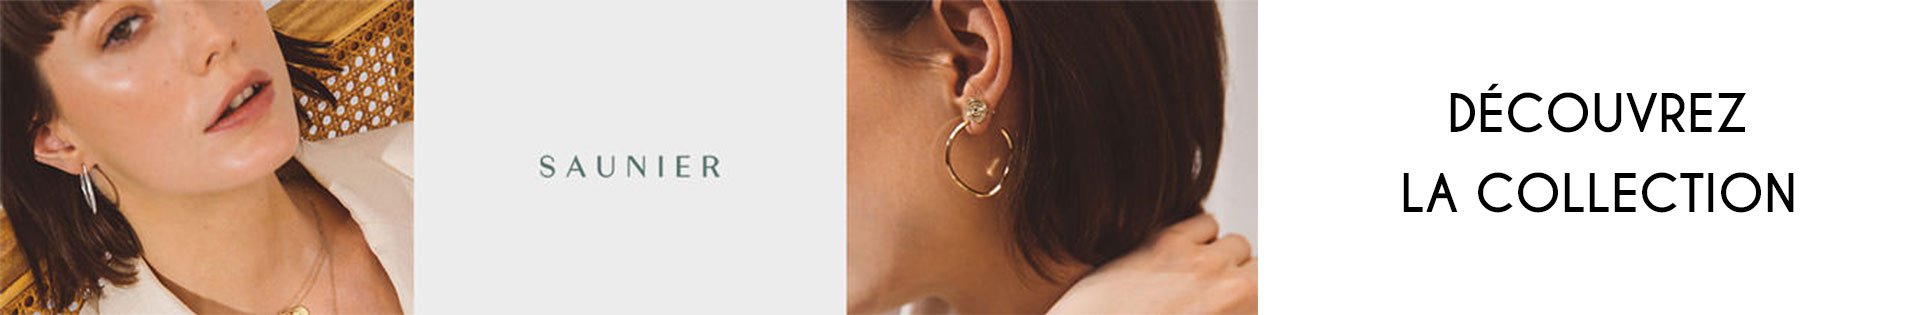 Marques de bijoux - Saunier - Boucles d'oreille